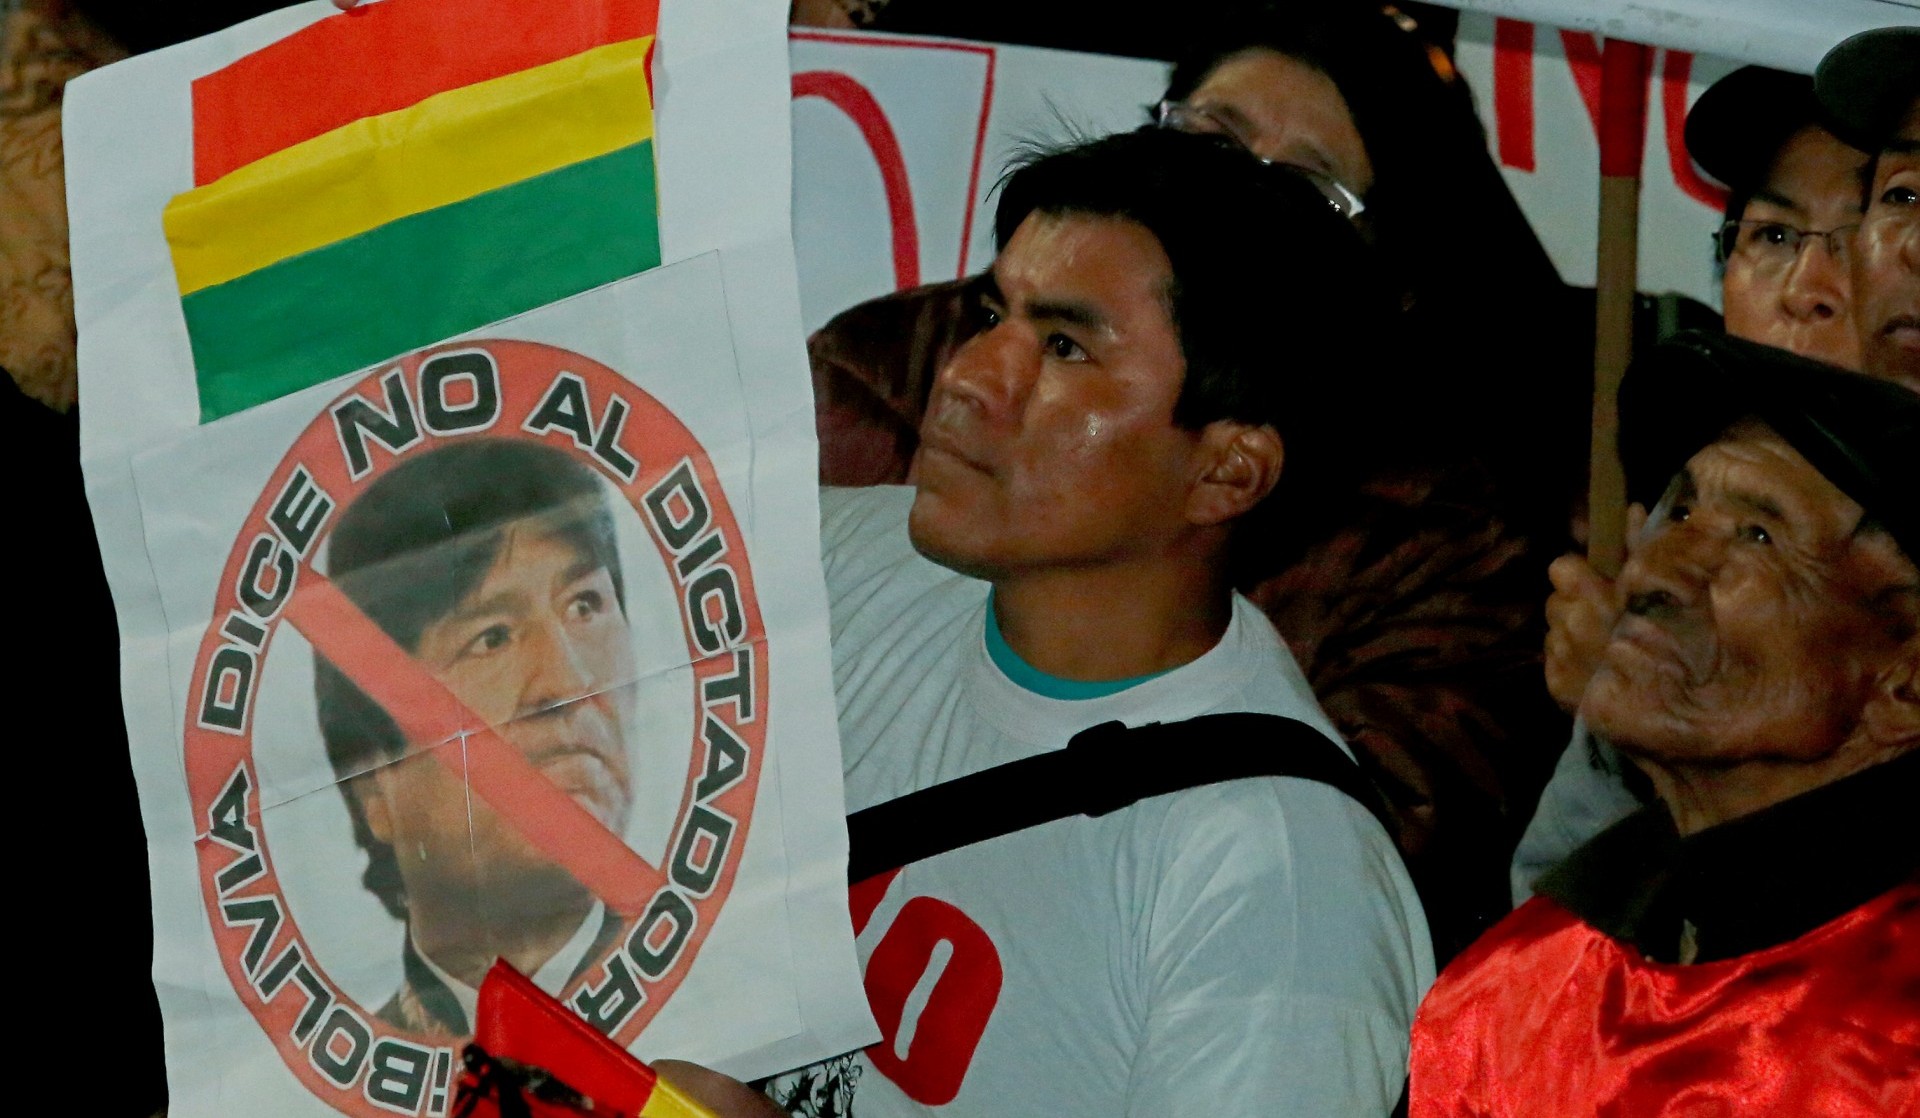 La oposición boliviana volverá a apelar ante la CIDH contra la reelección indefinida impulsada por Evo Morales en 2019